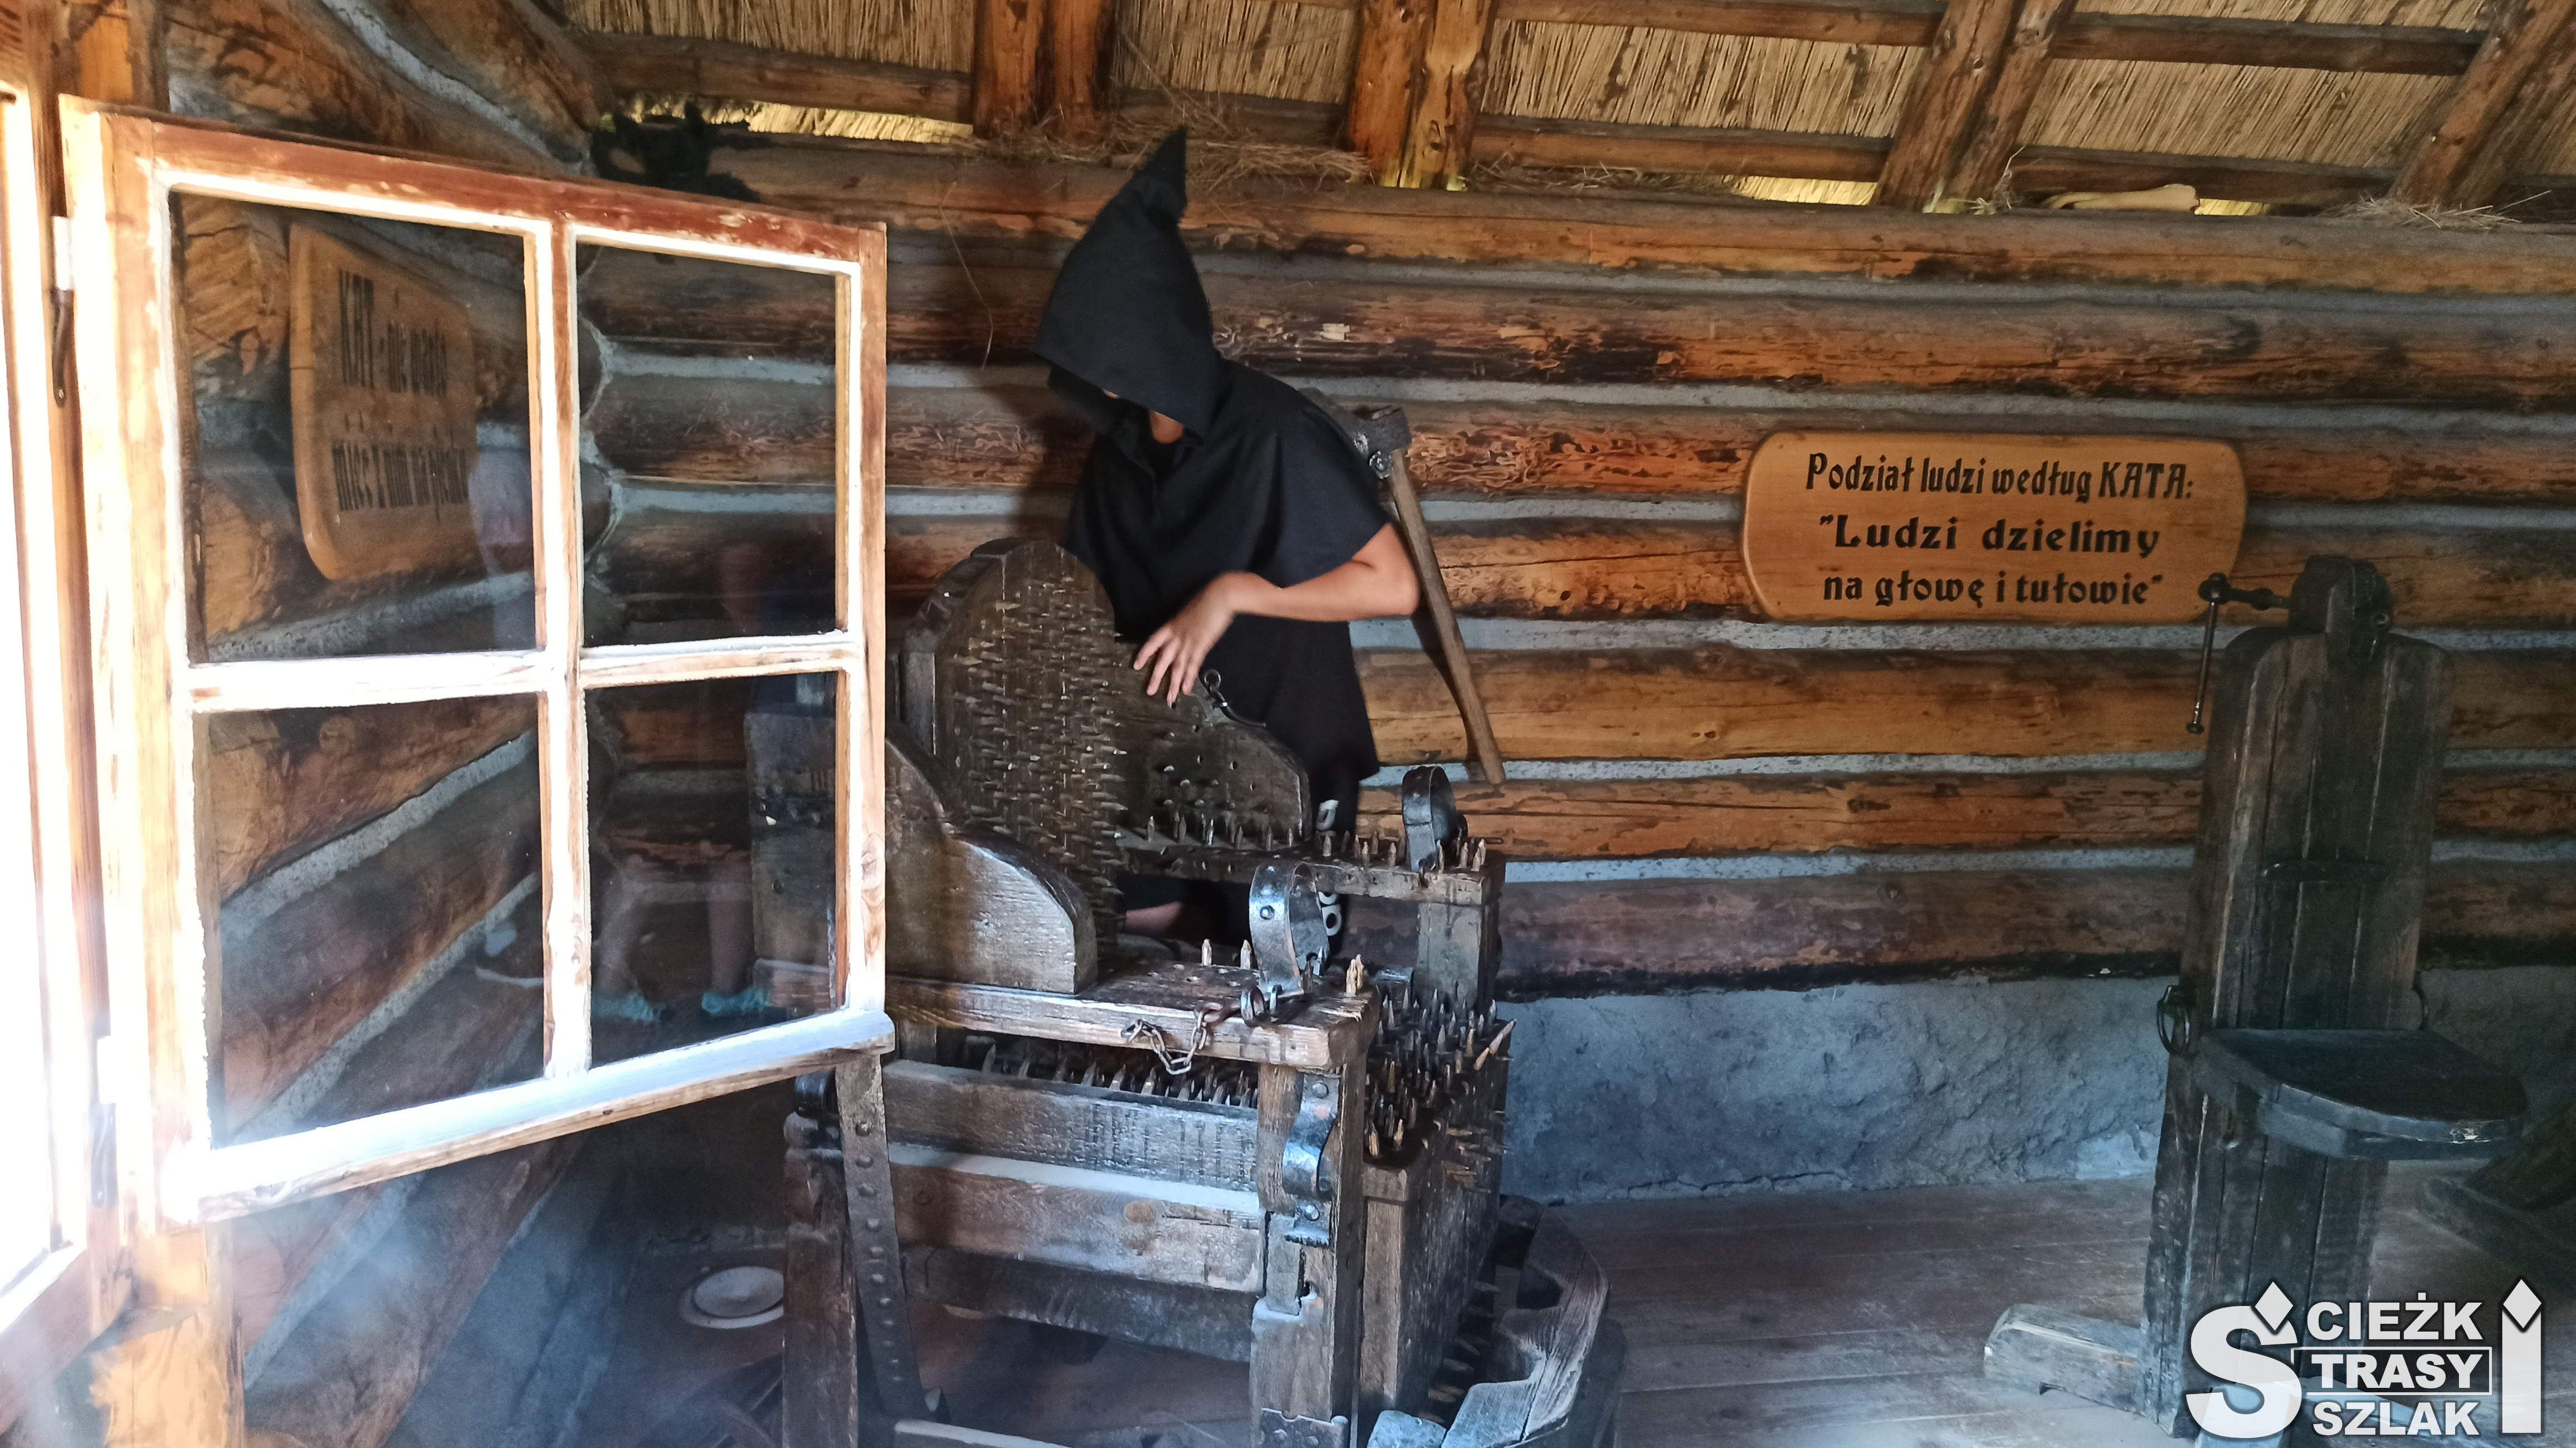 Wnętrze Chaty Kata w krzesłem do tortur, przy którym stoi gospodarz - ubrany na czarno kat